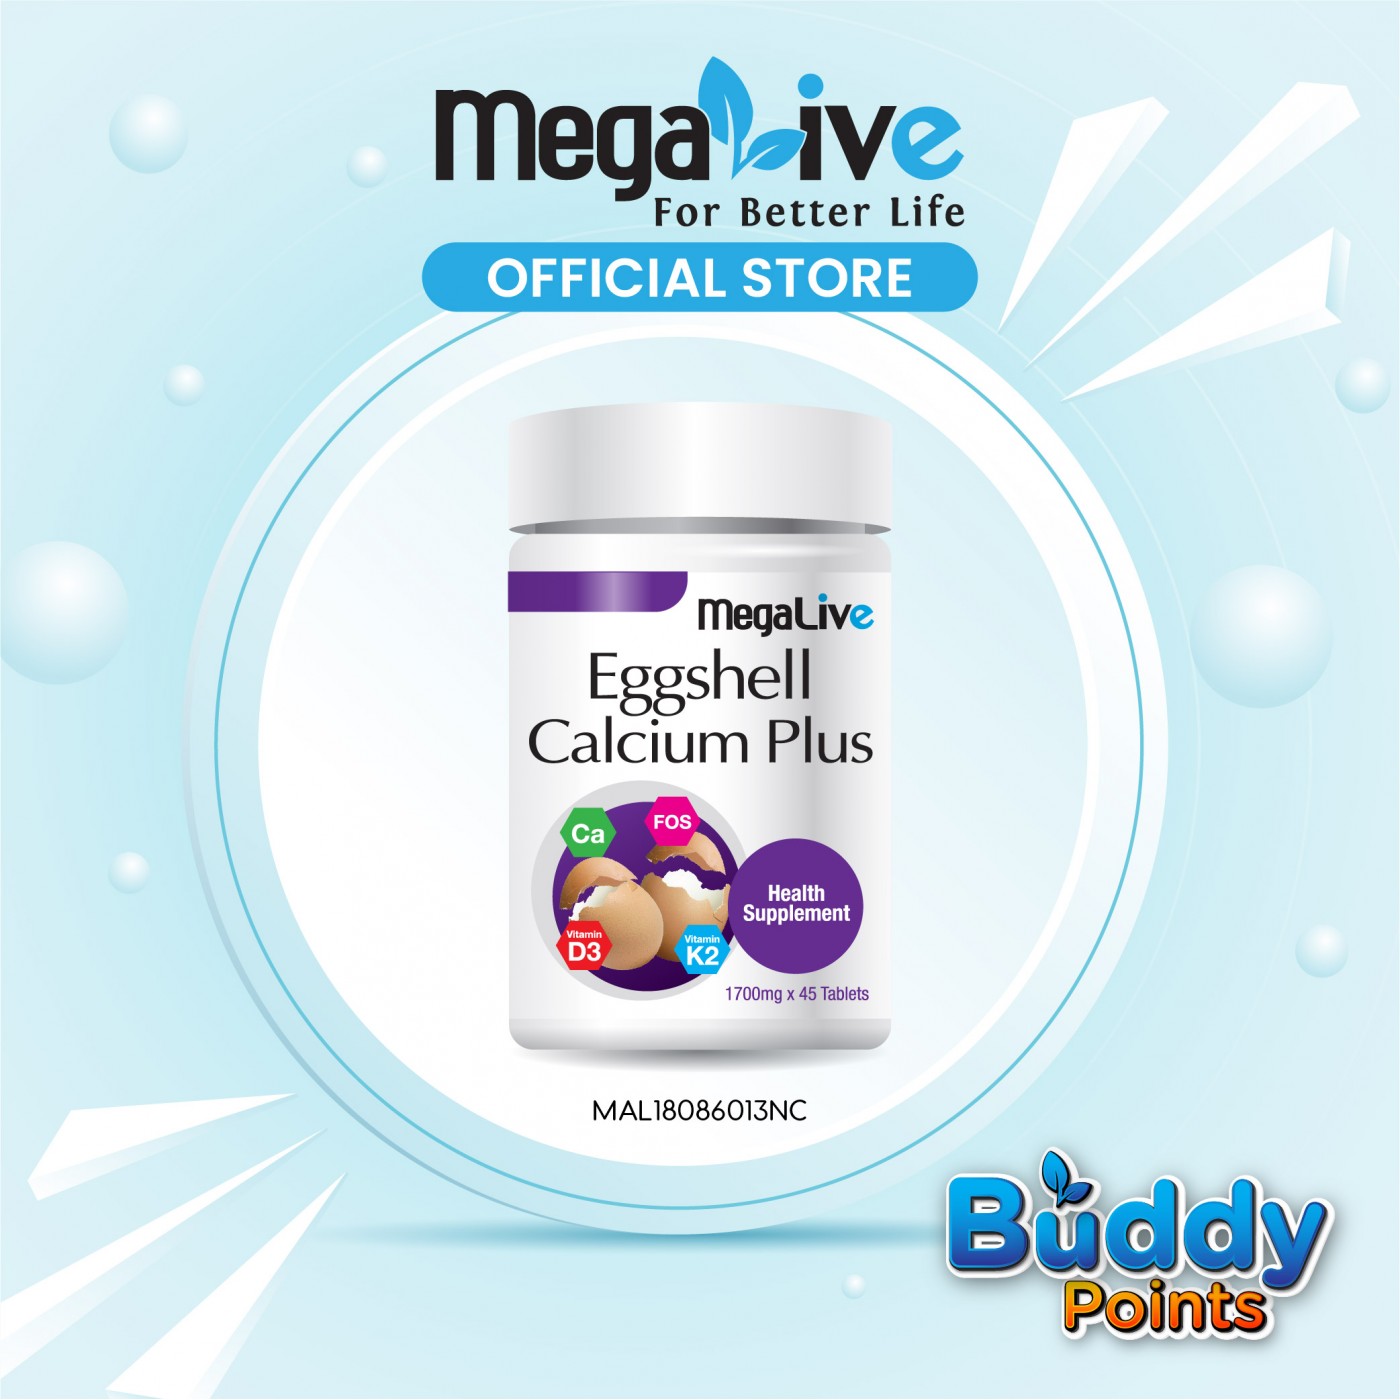 MegaLive Eggshell Calcium Plus